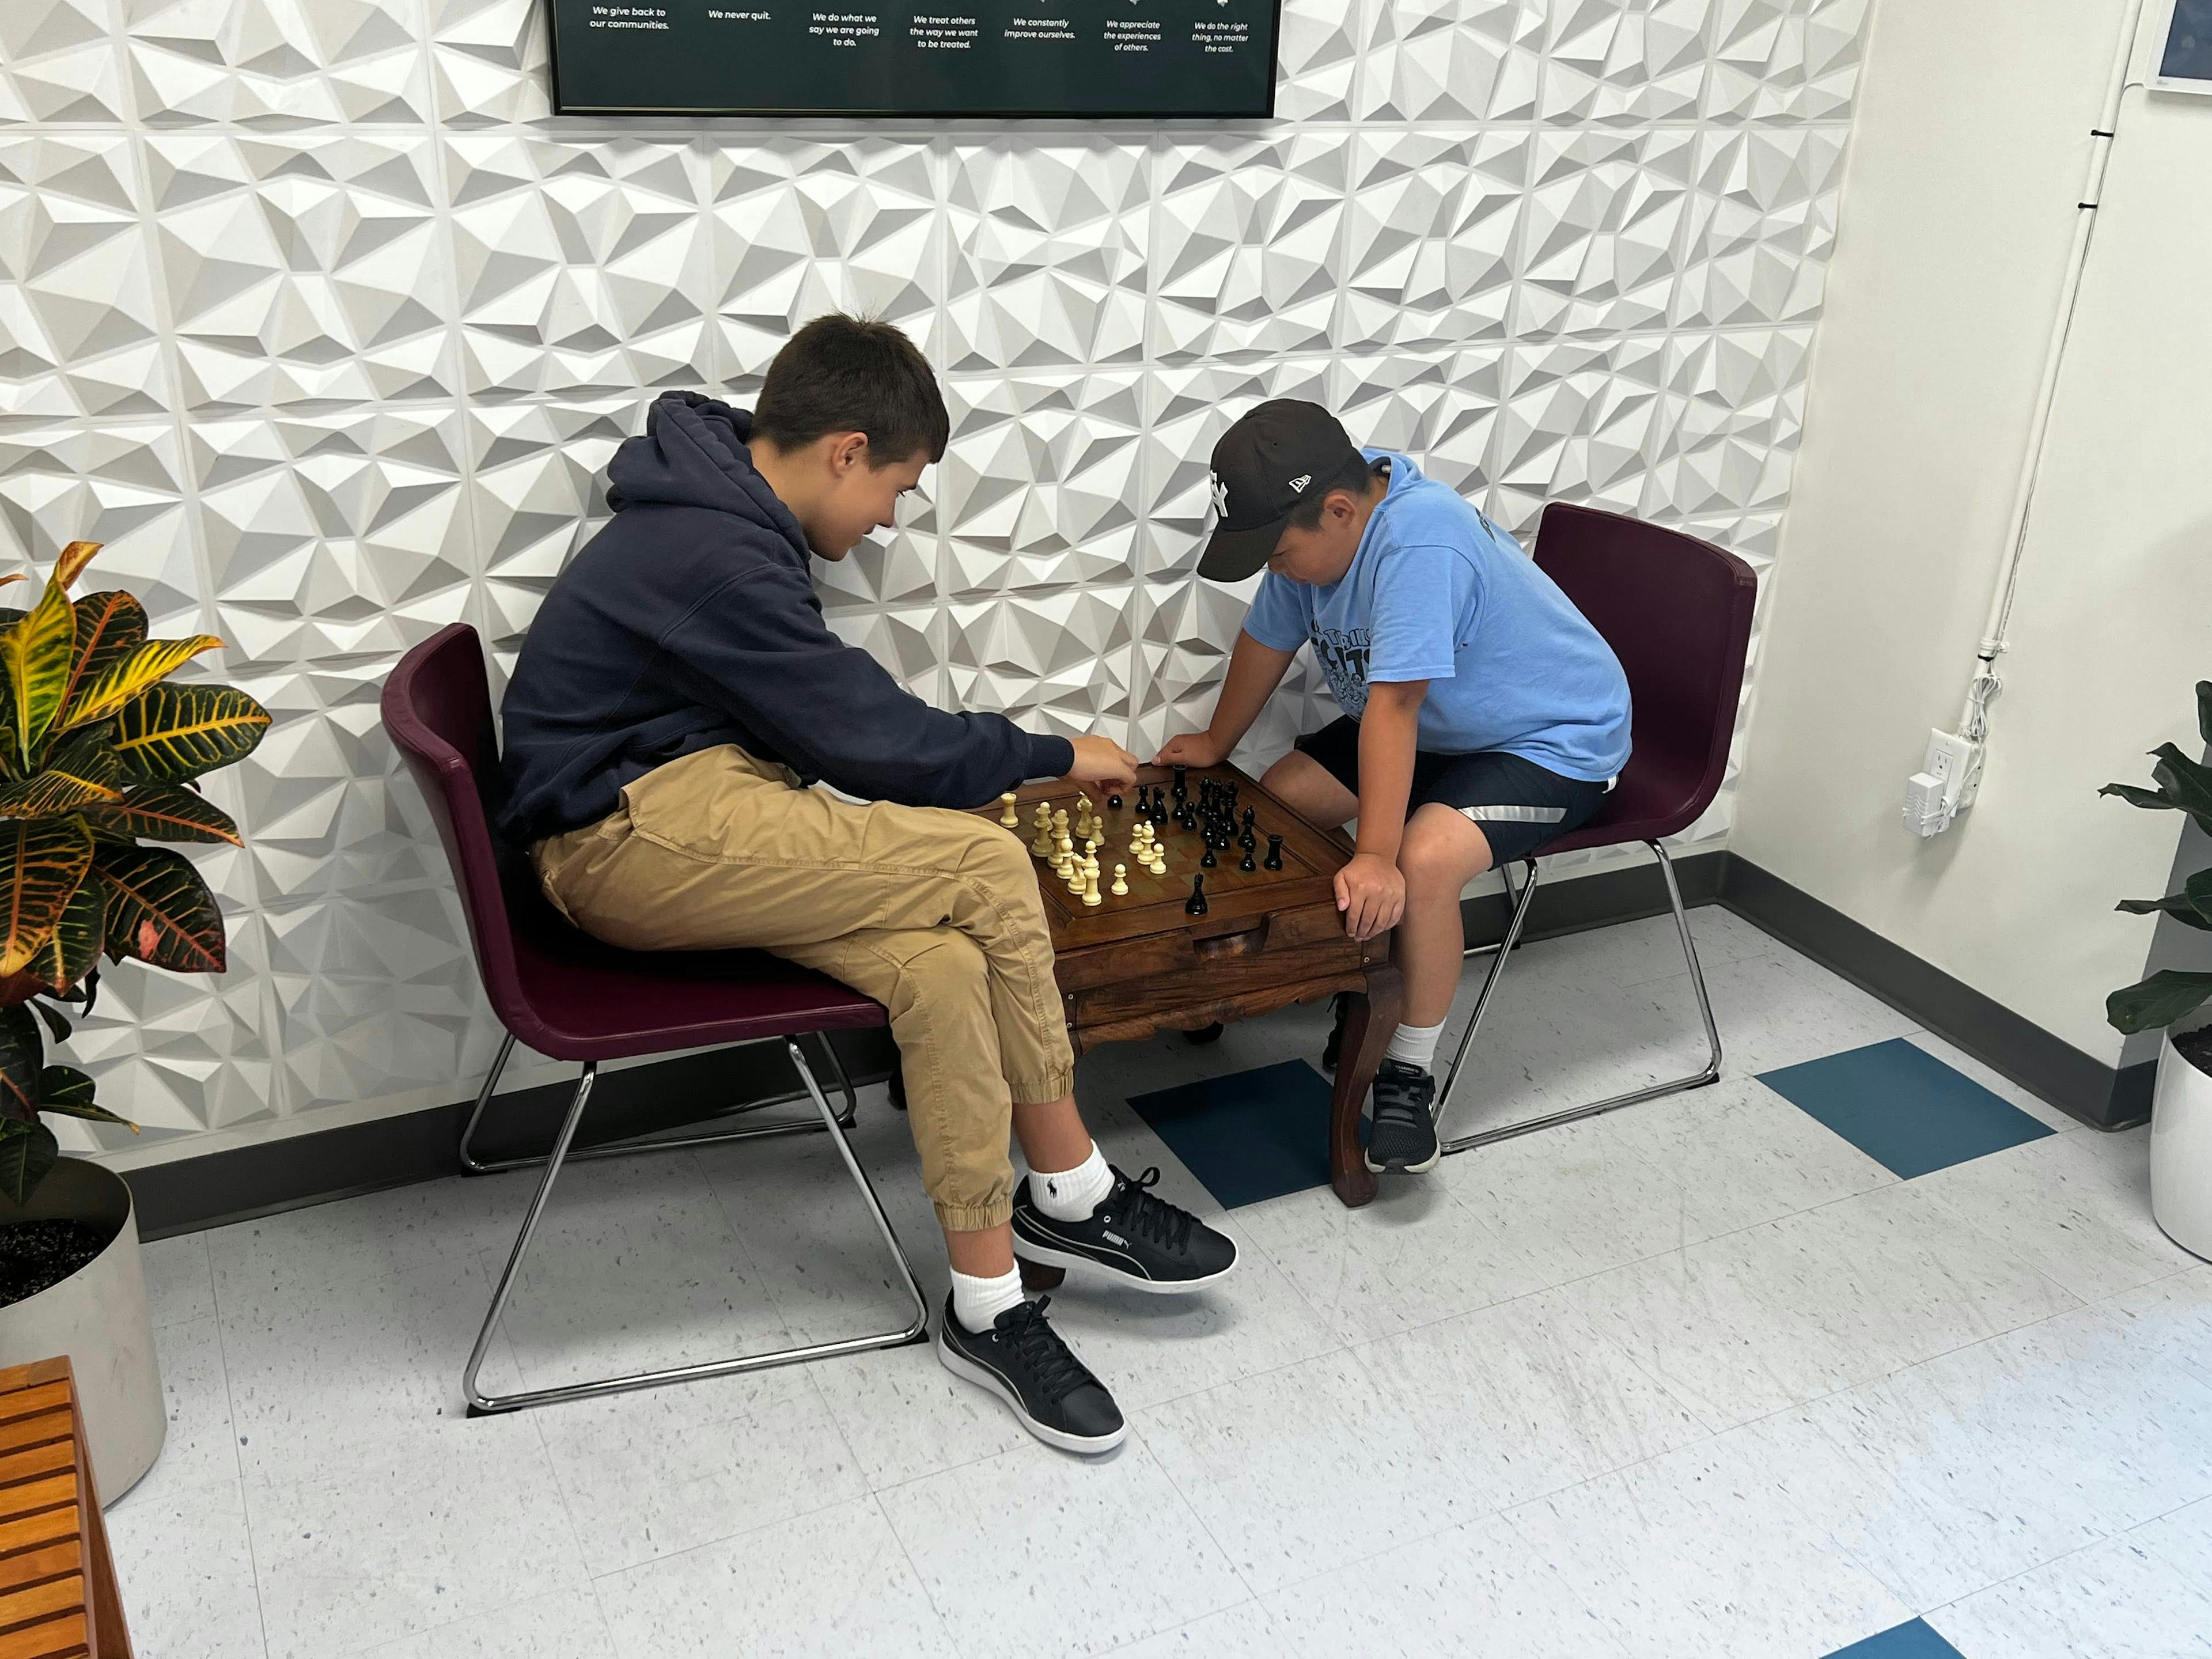 ATI Toronto students playing chess